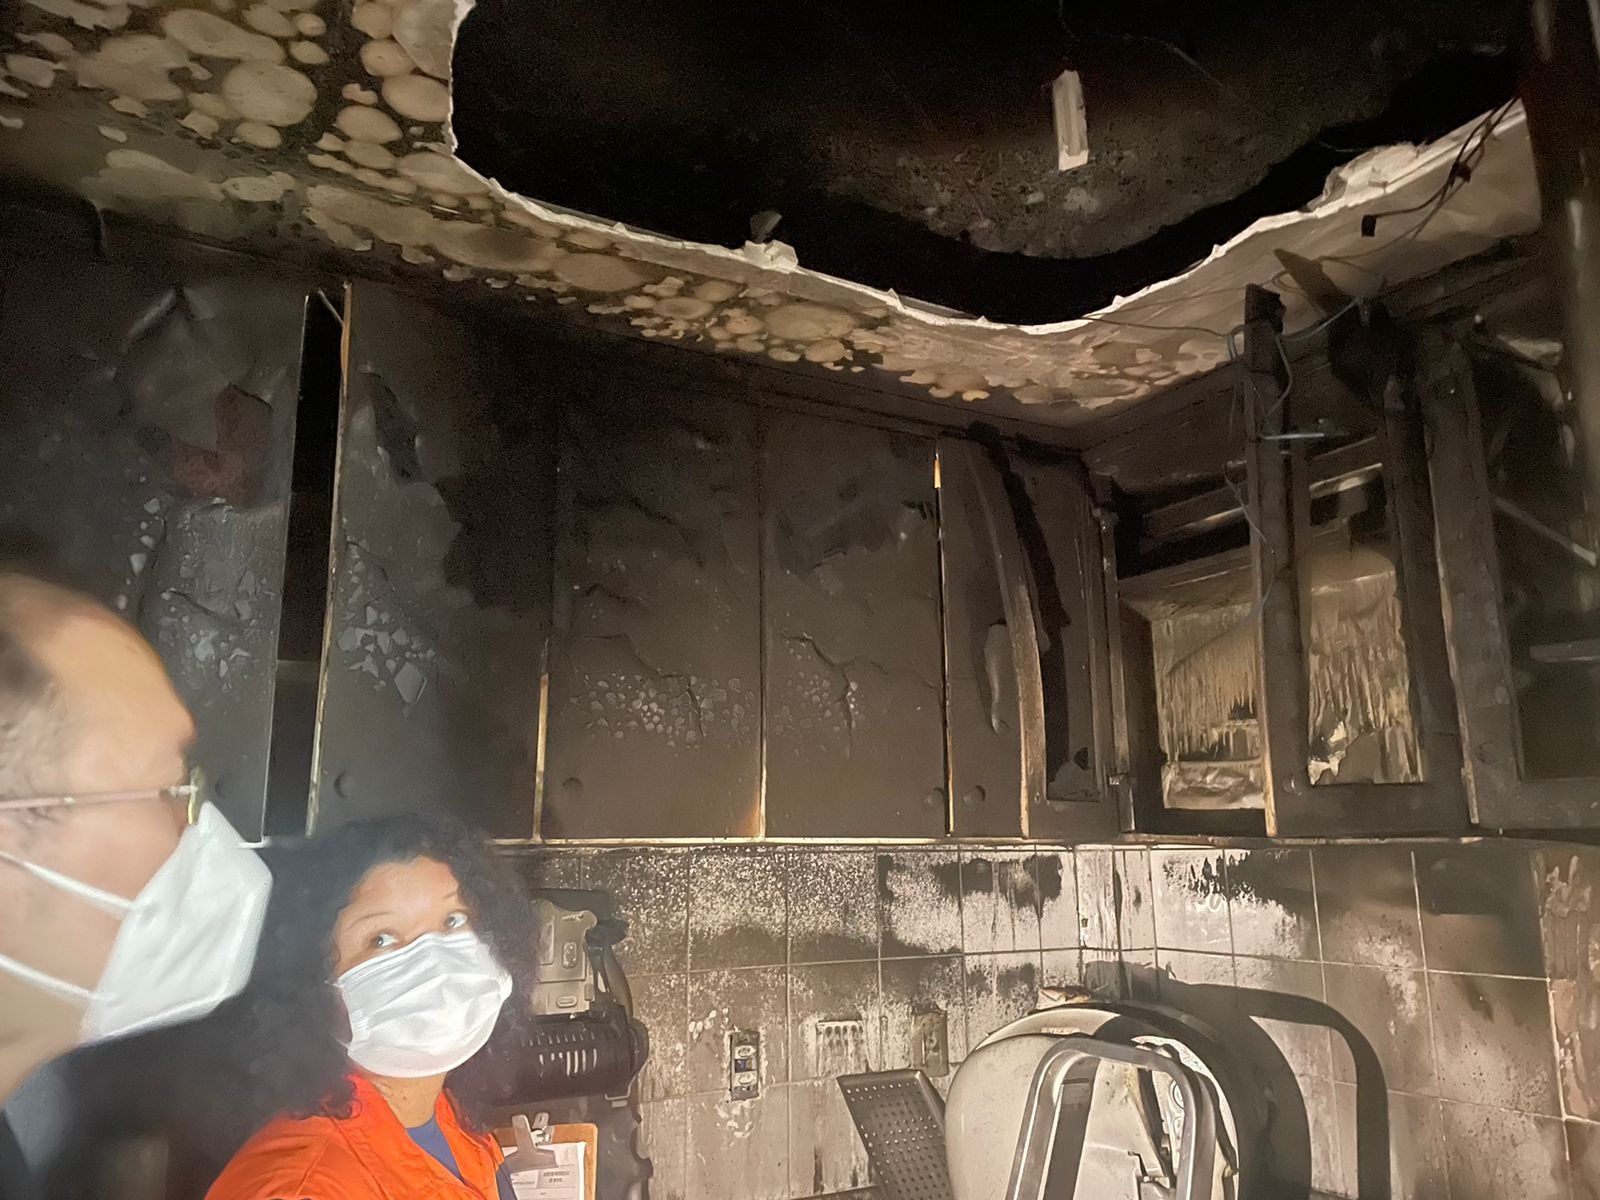 Sala em que incêndio teve início ficou bastante suja de fuligem e o forro do teto caiu